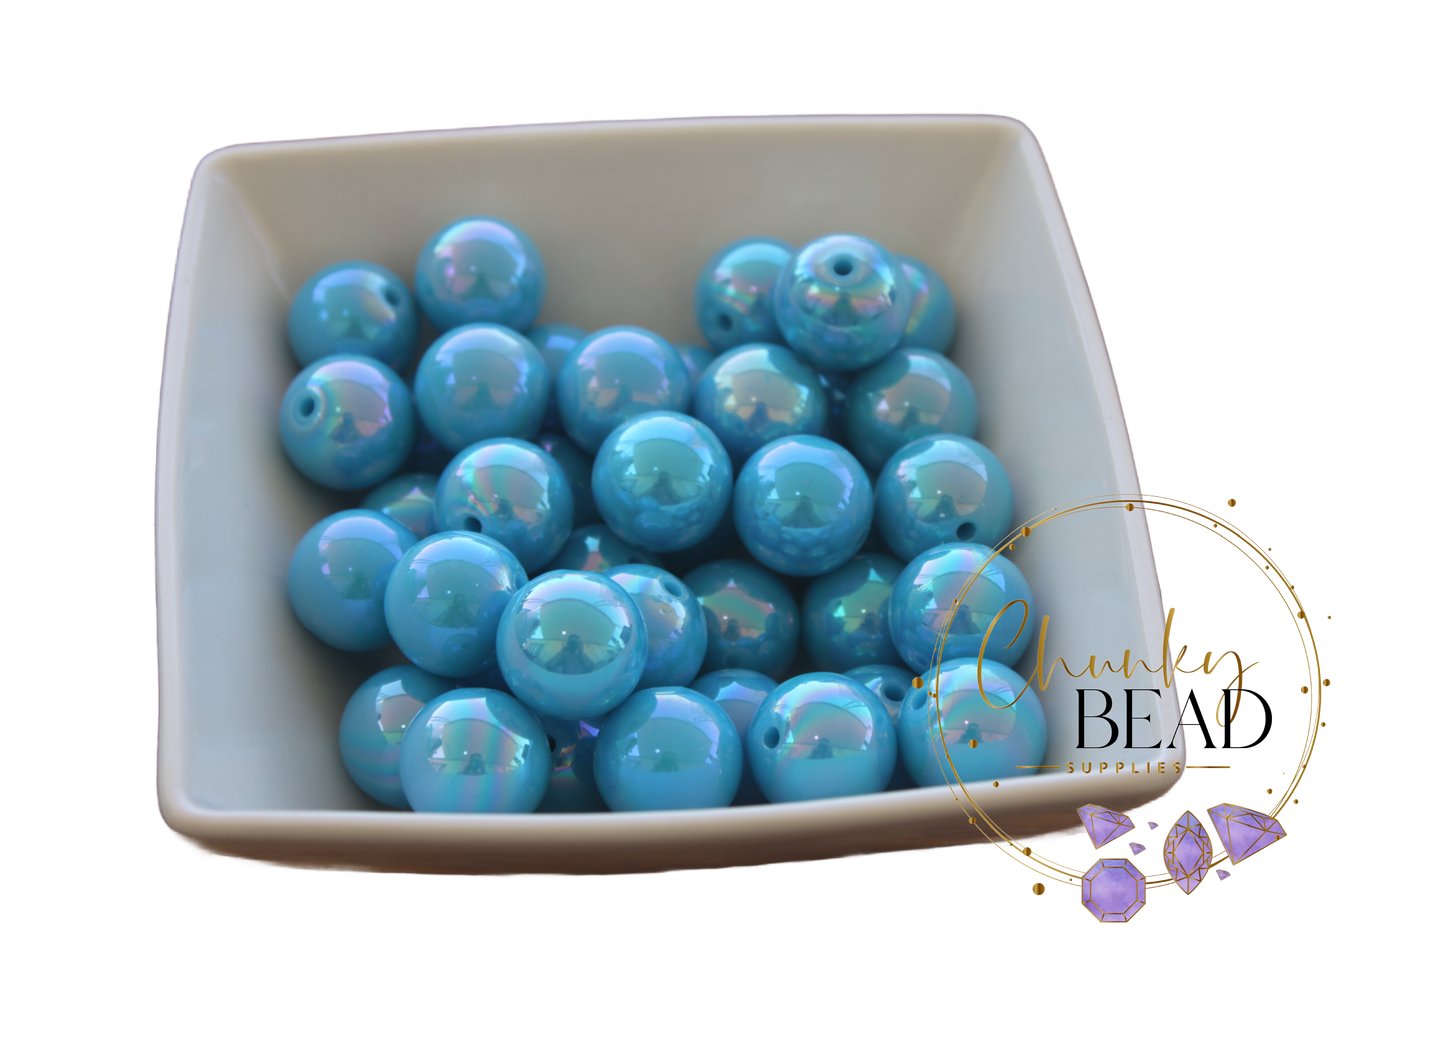 Perles brillantes AB bleu aqua 20 mm